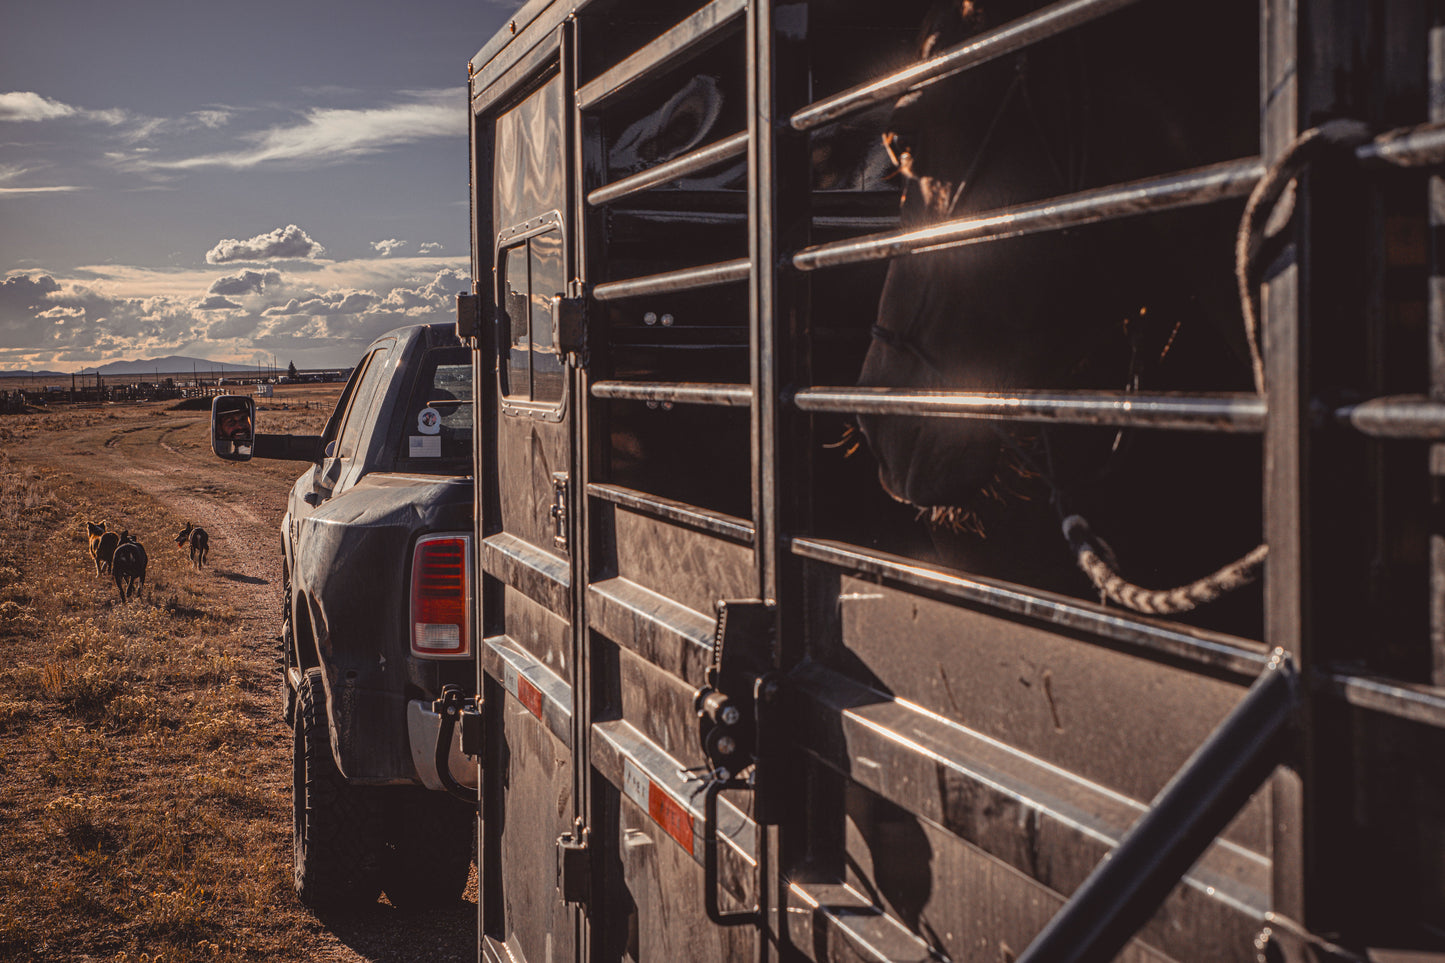 "The Rancher" Apex Livestock Trailer